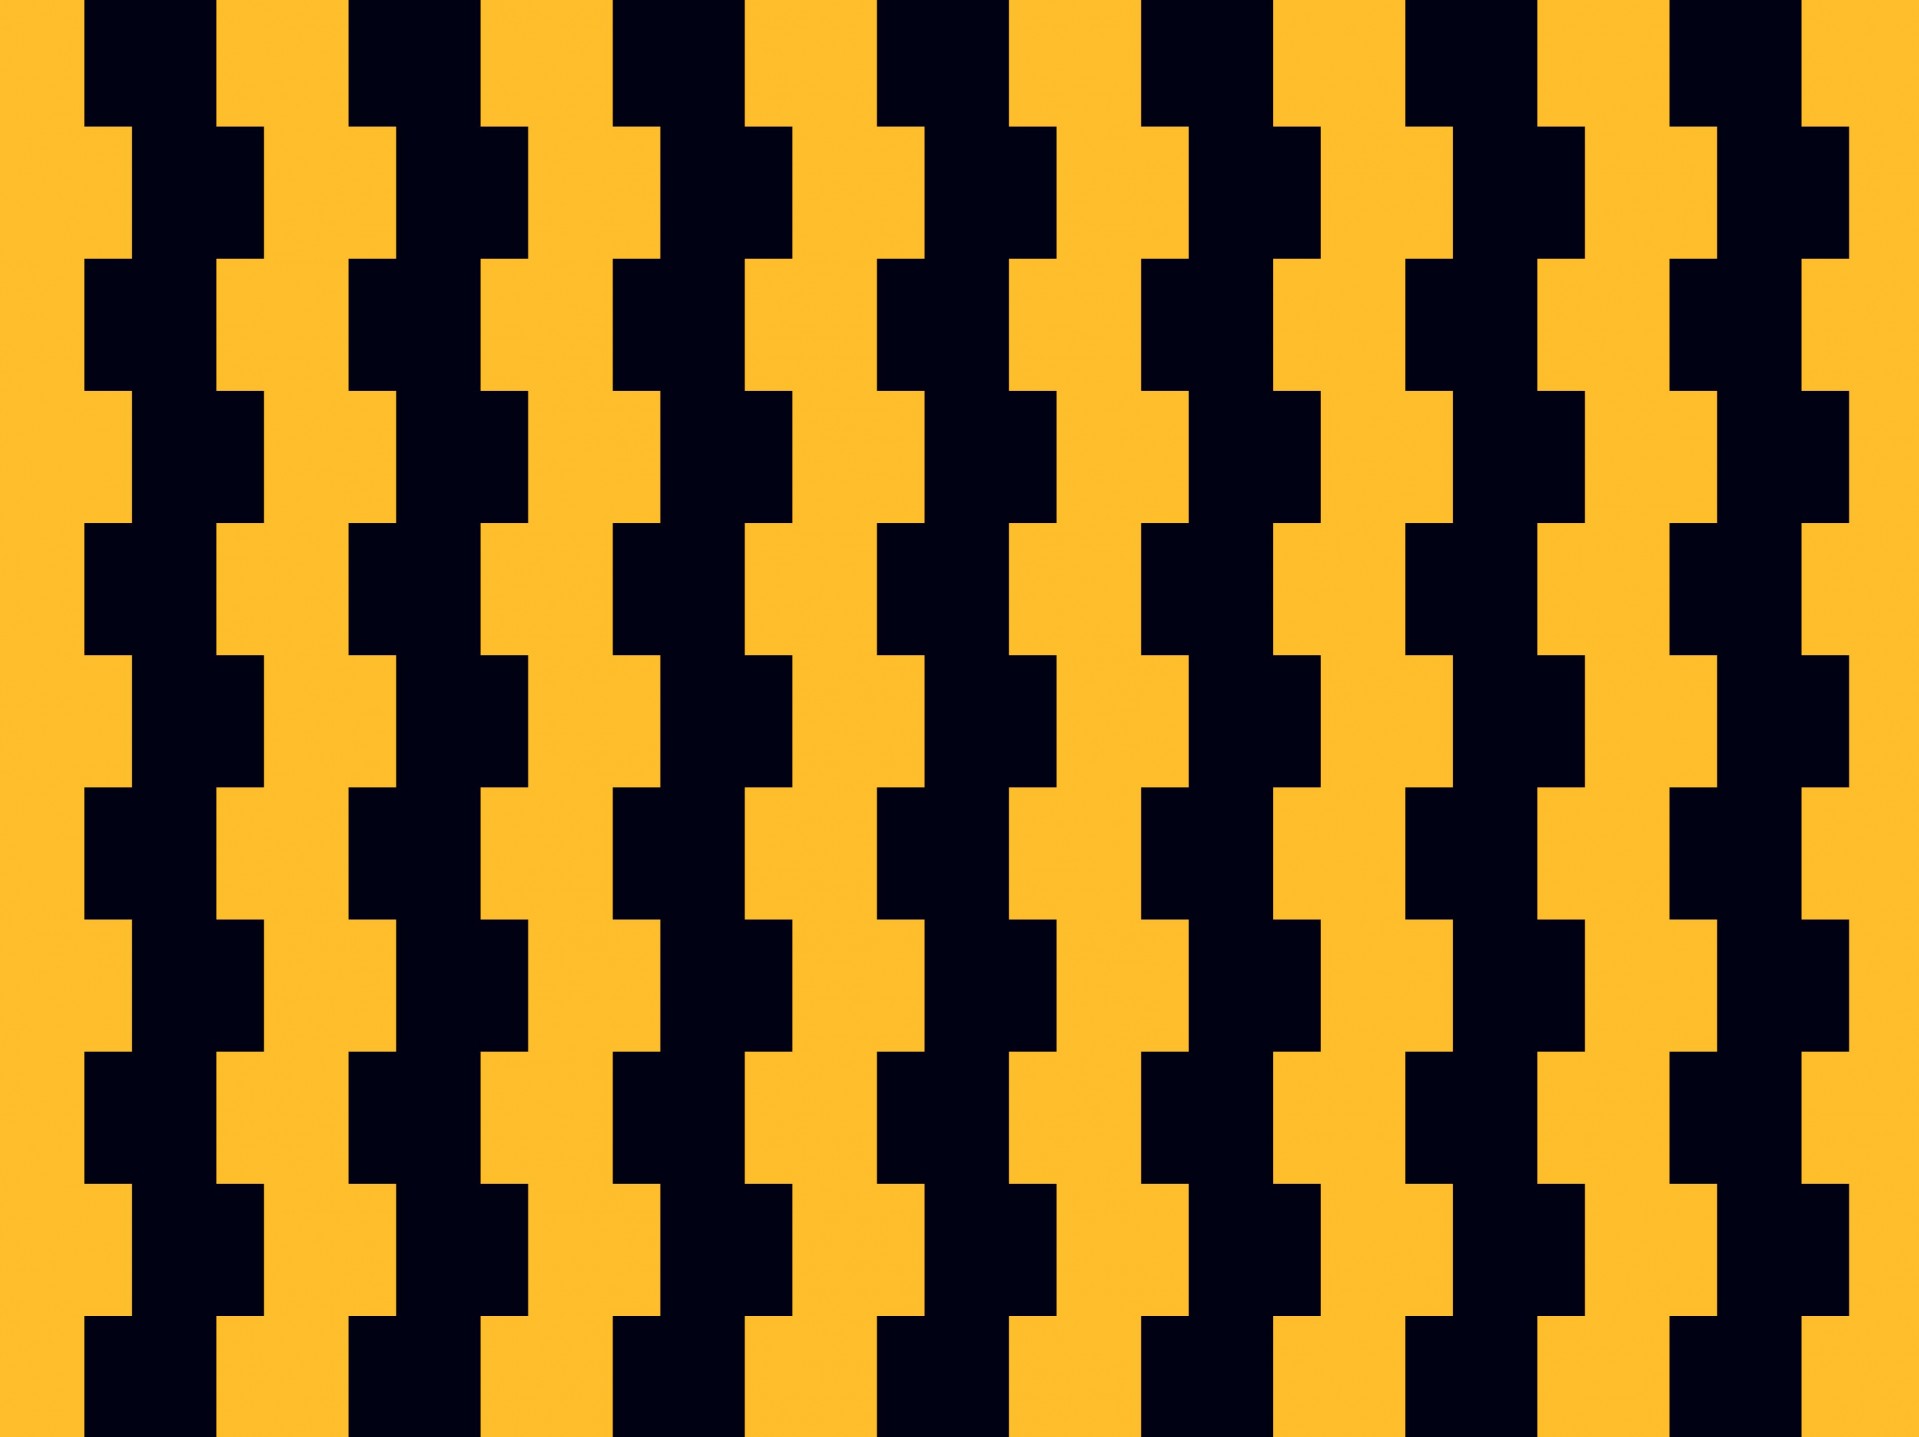 Zwart-gele gekartelde blokpatroon